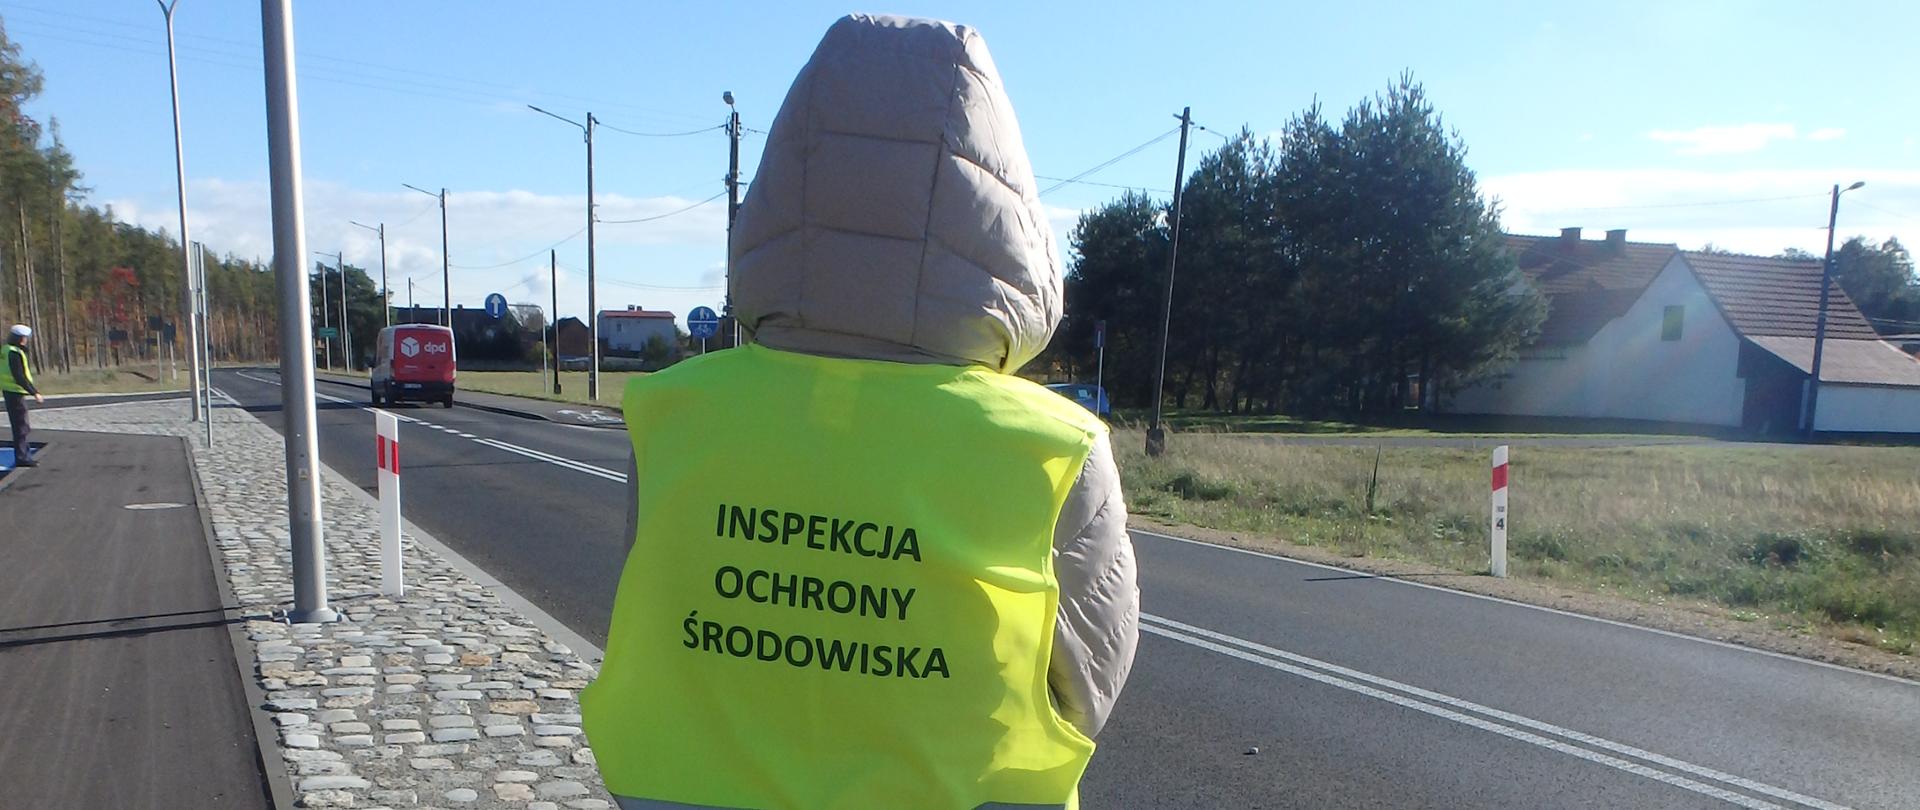 Inspektor Wojewódzkiego Inspektoratu Ochrony Środowiska w Opolu podczas kontroli